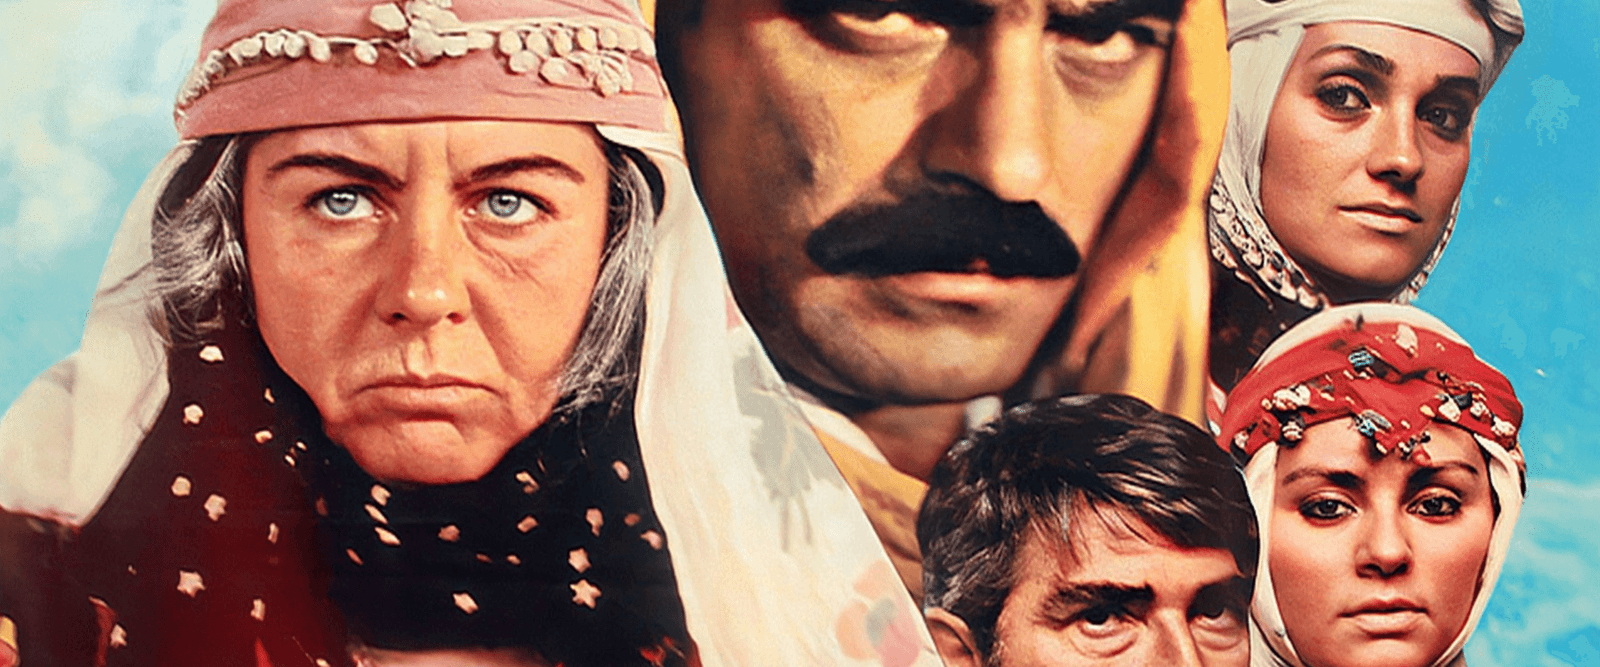 10 Film Önerisi / Türk Sinemasının Altın Çağı